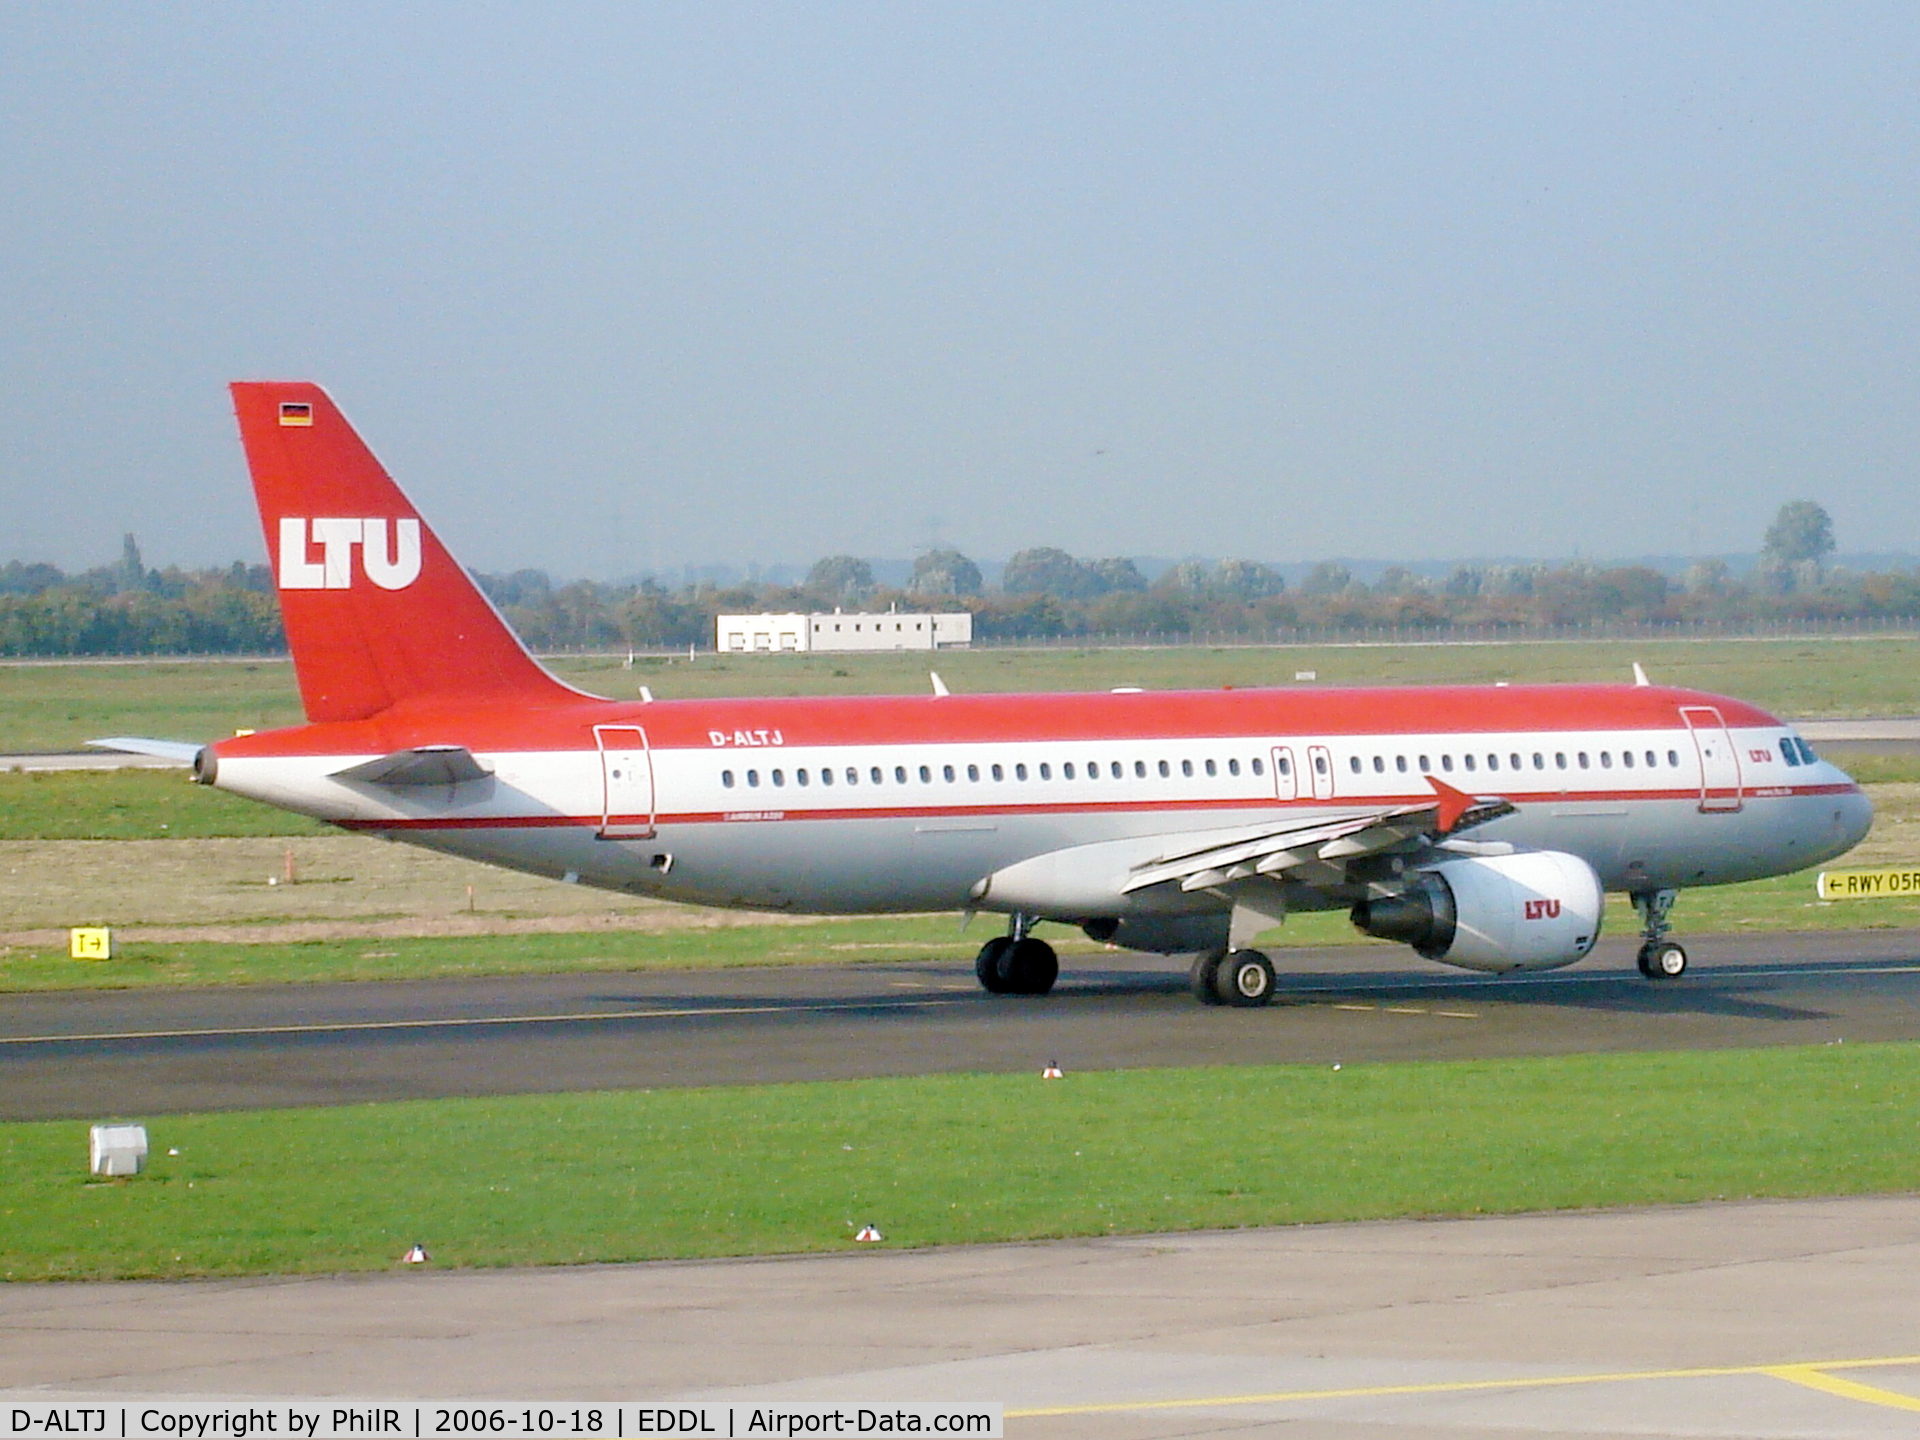 D-ALTJ, 2002 Airbus A320-214 C/N 1838, LTU departing Dusseldorf